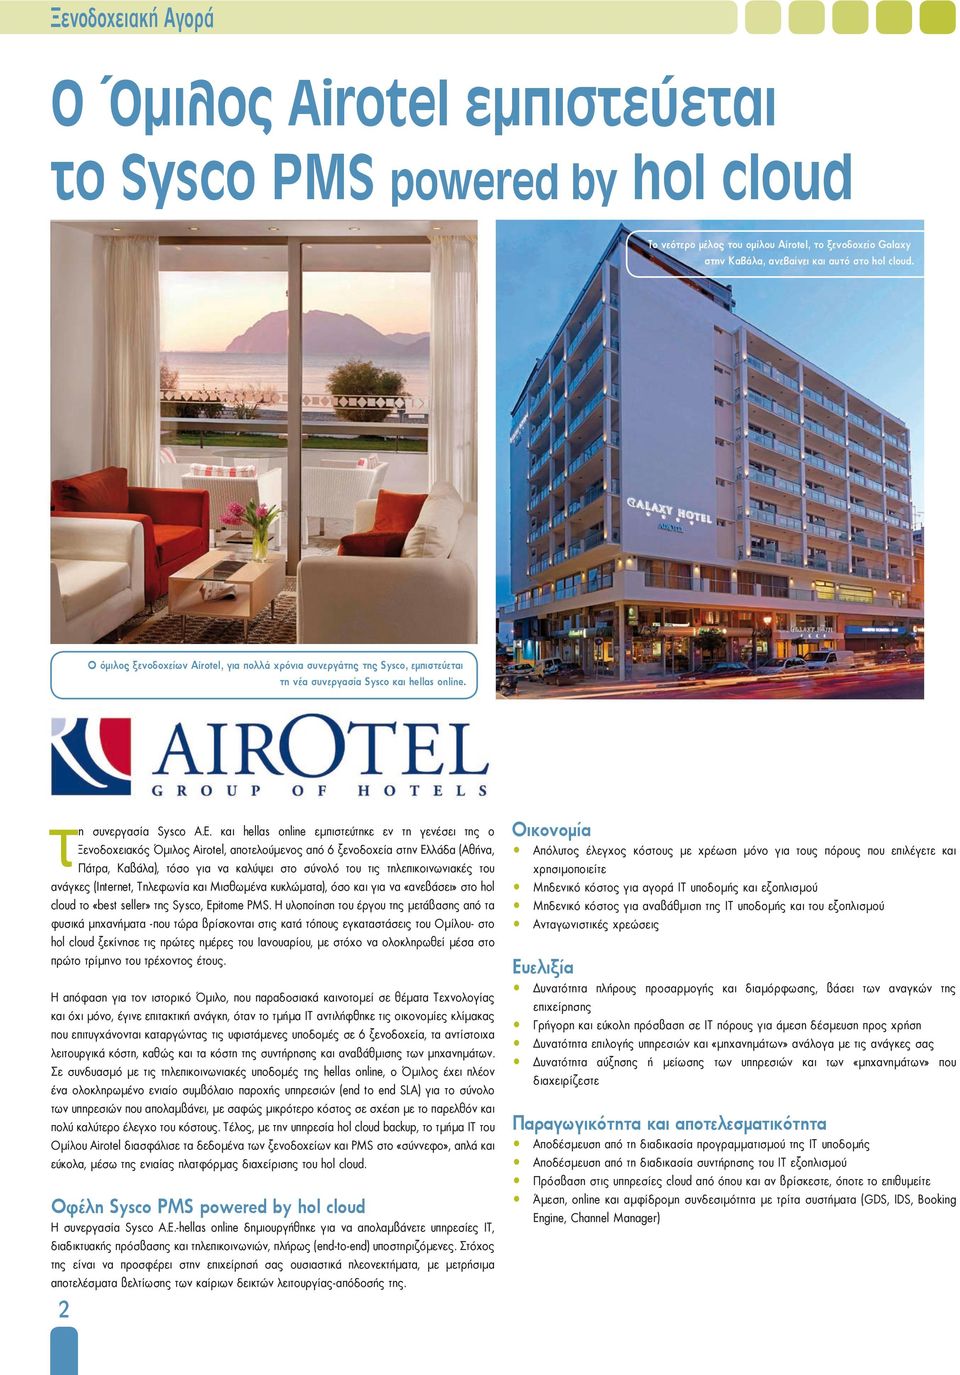 και hellas online εμπιστεύτηκε εν τη γενέσει της ο Ξενοδοχειακός Όμιλος Airotel, αποτελούμενος από 6 ξενοδοχεία στην Ελλάδα (Αθήνα, Πάτρα, Καβάλα), τόσο για να καλύψει στο σύνολό του τις